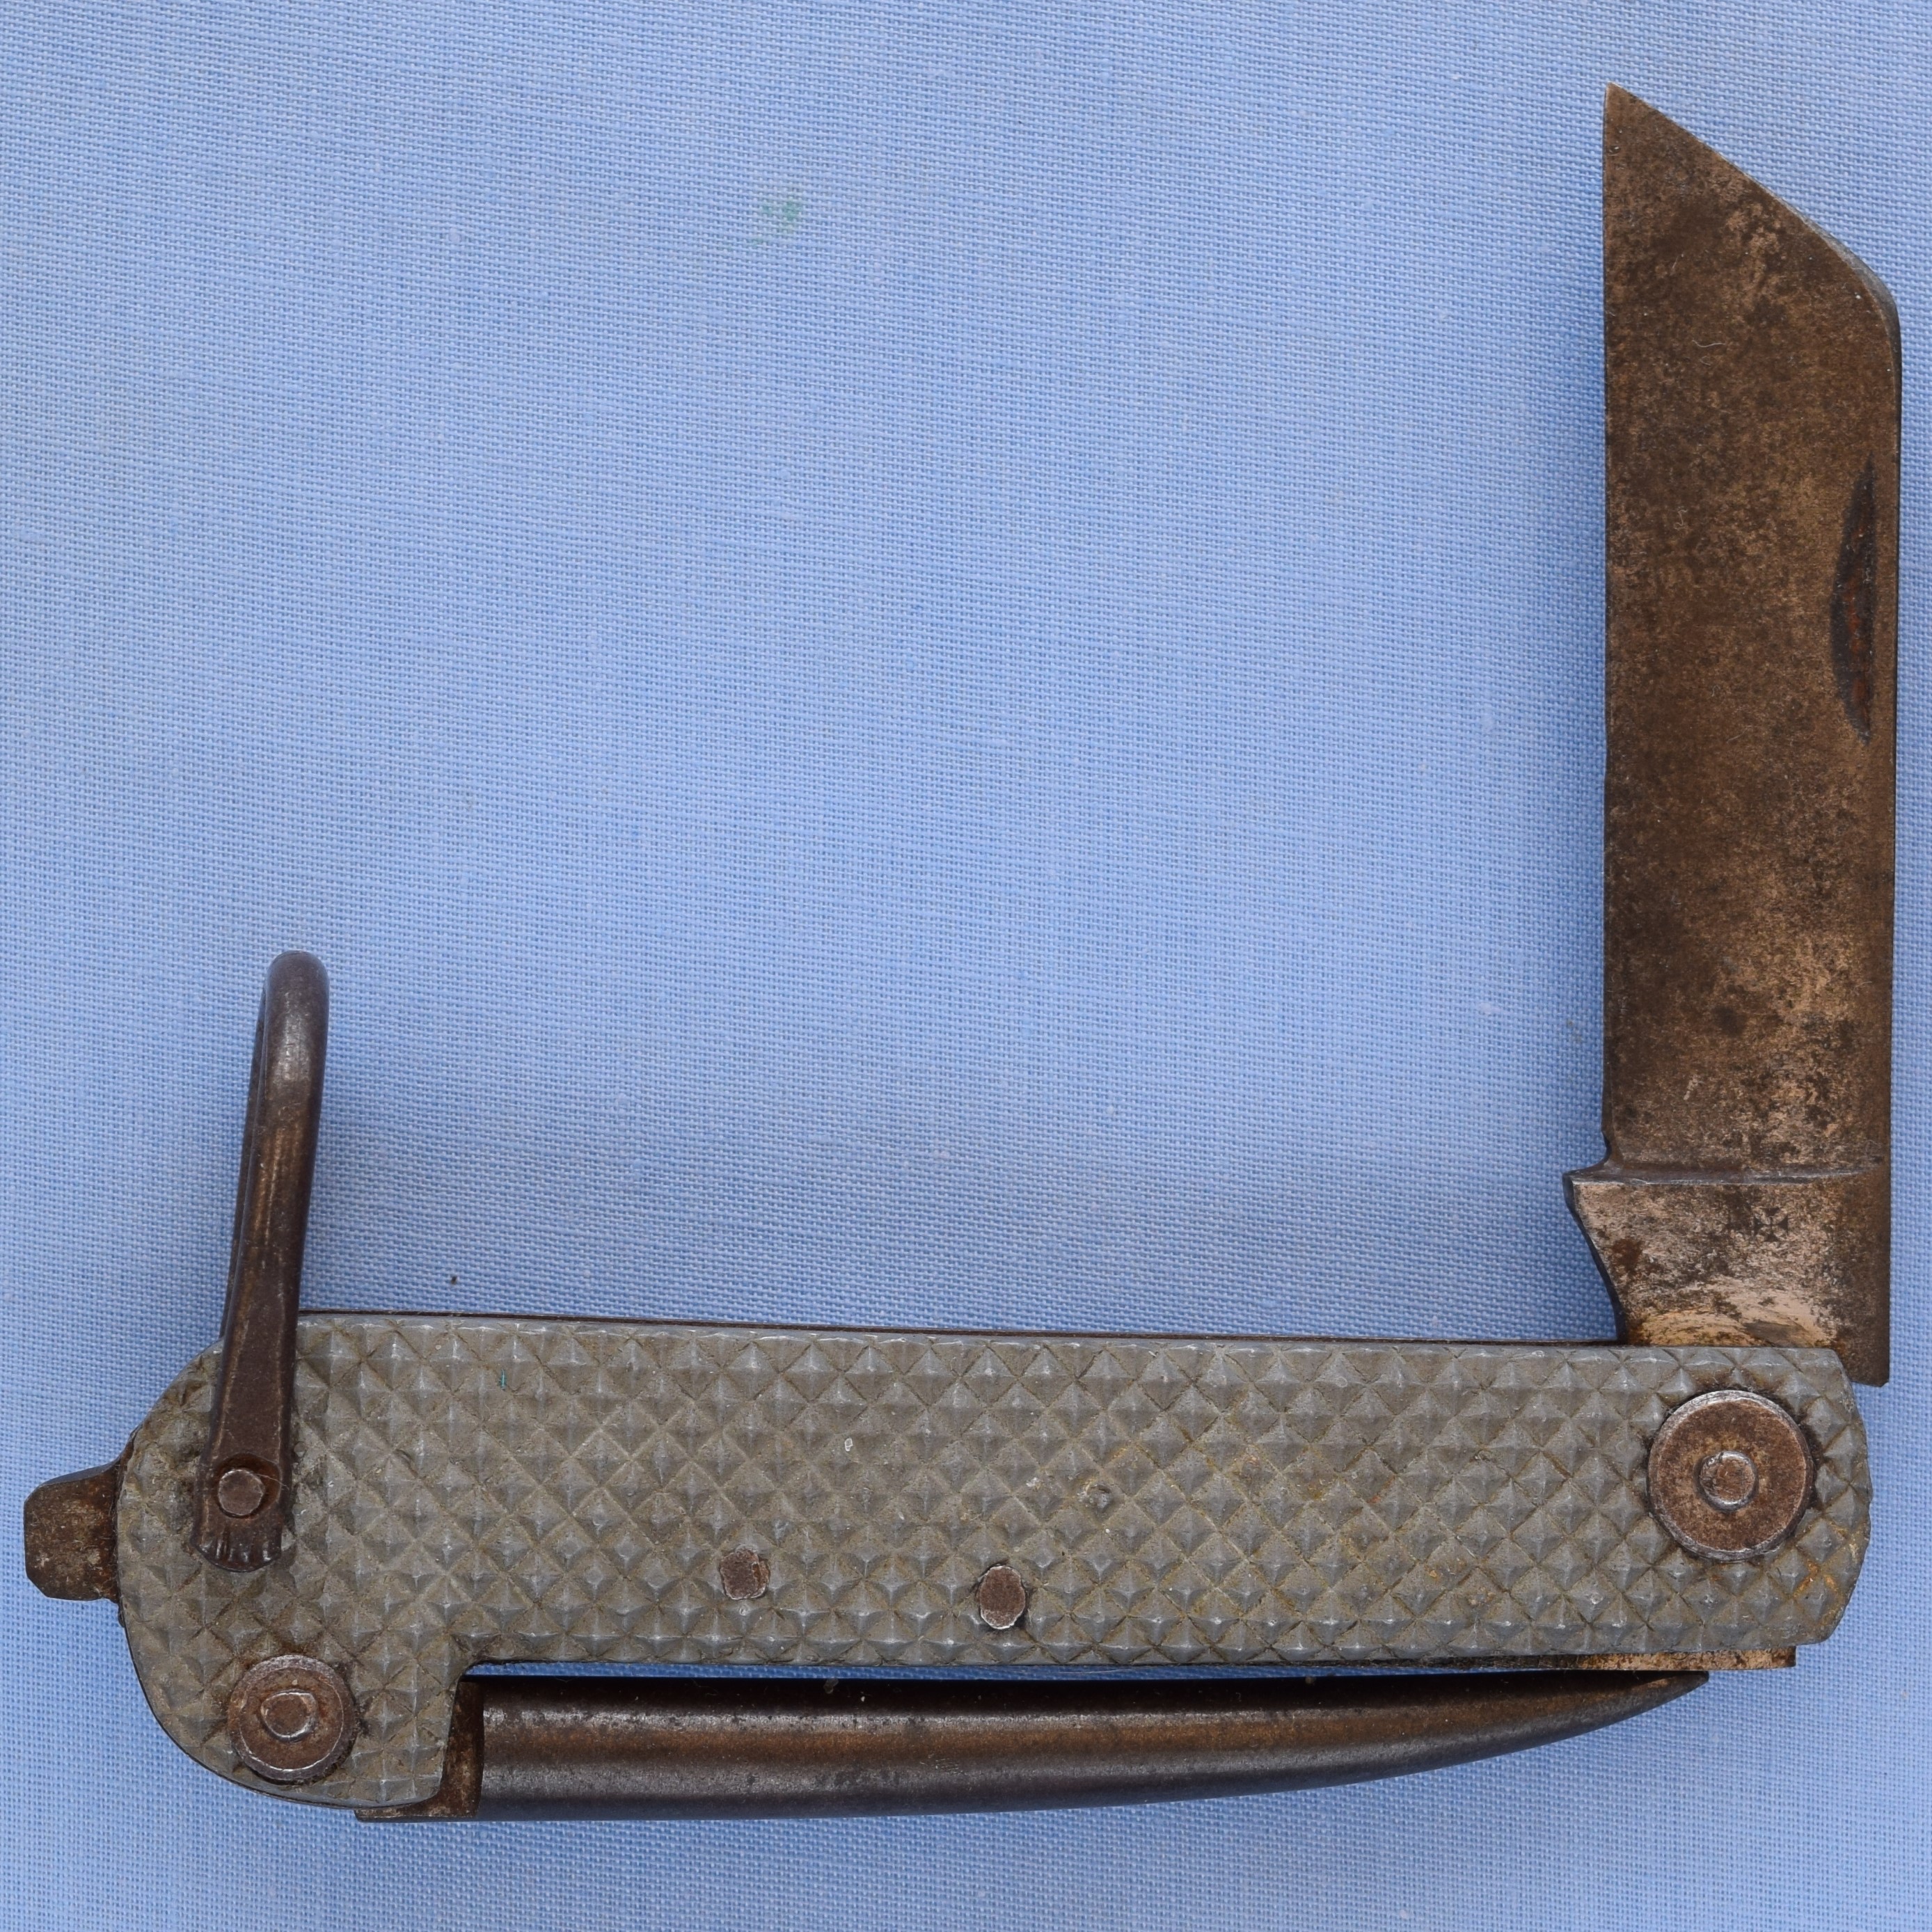 Post War RN clasp knife